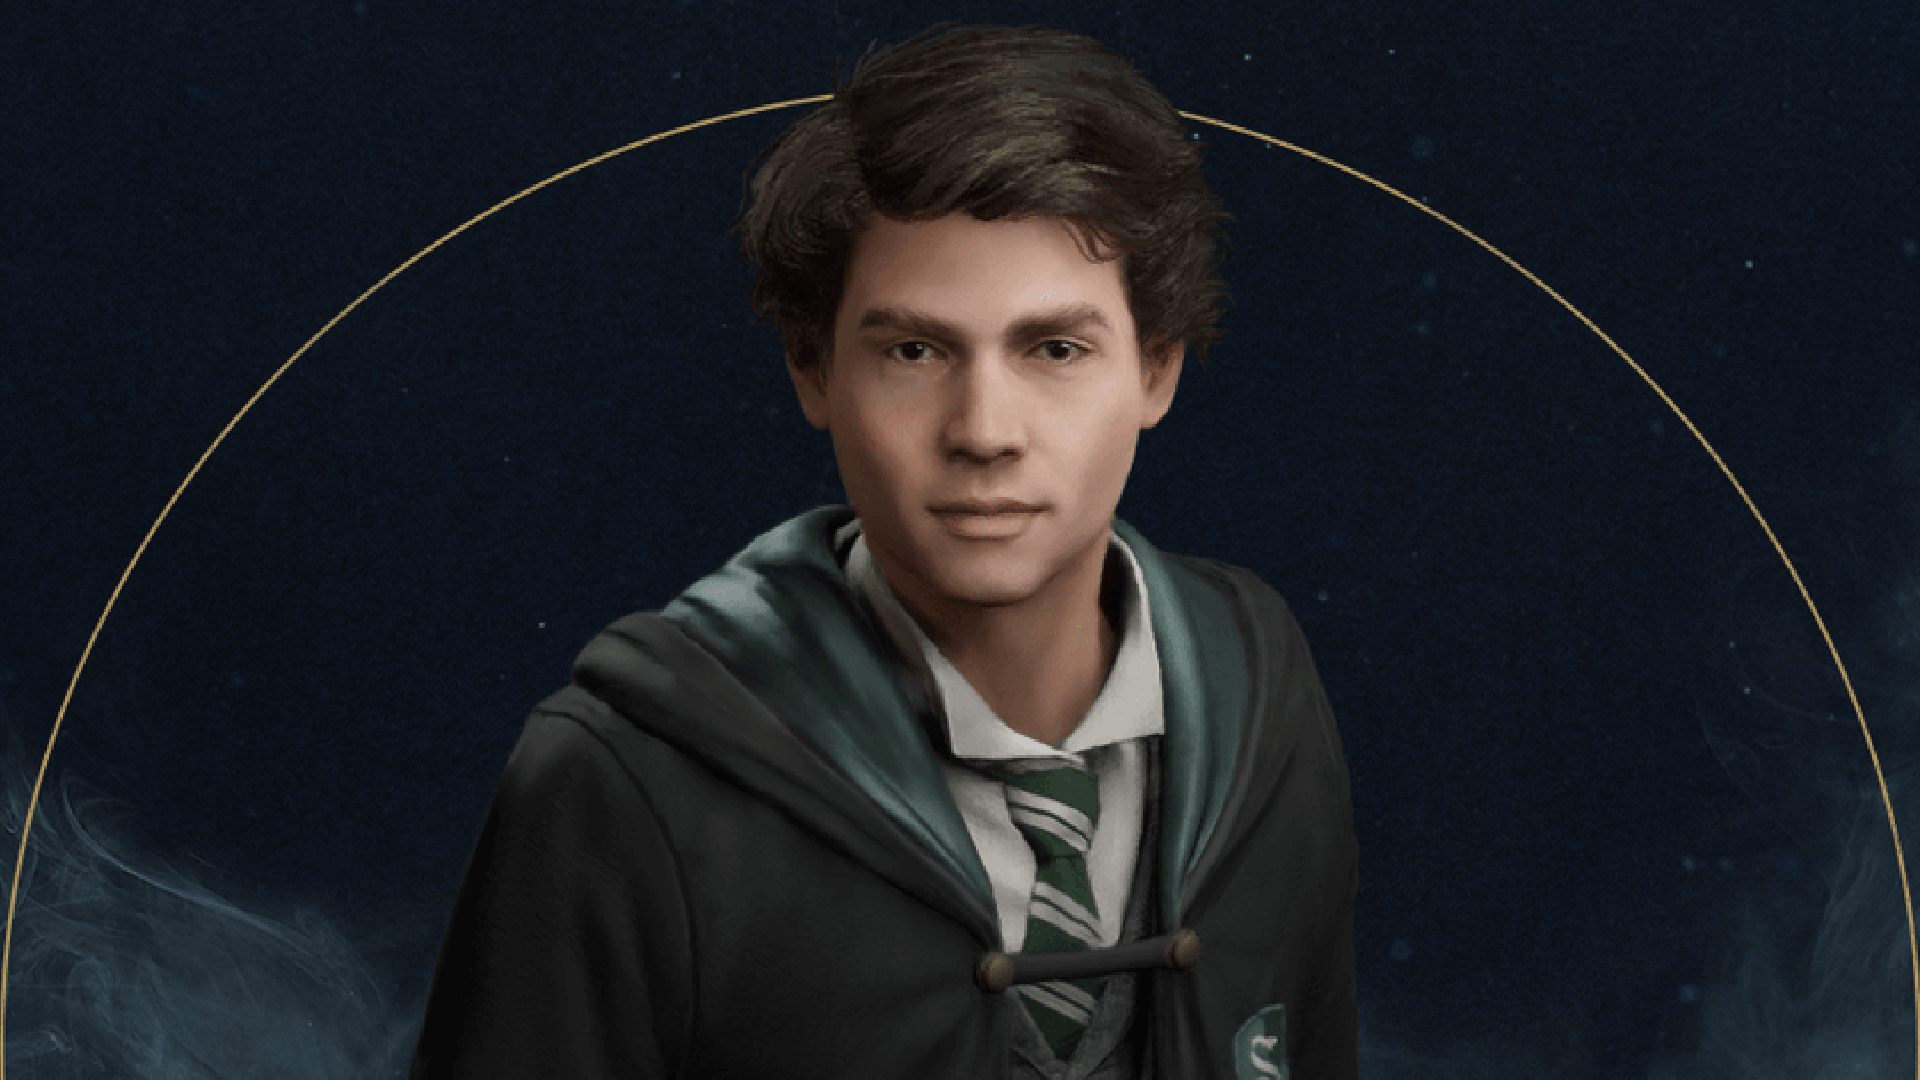 Hogwarts Di sản Nhân vật: Sebastian có thể được nhìn thấy